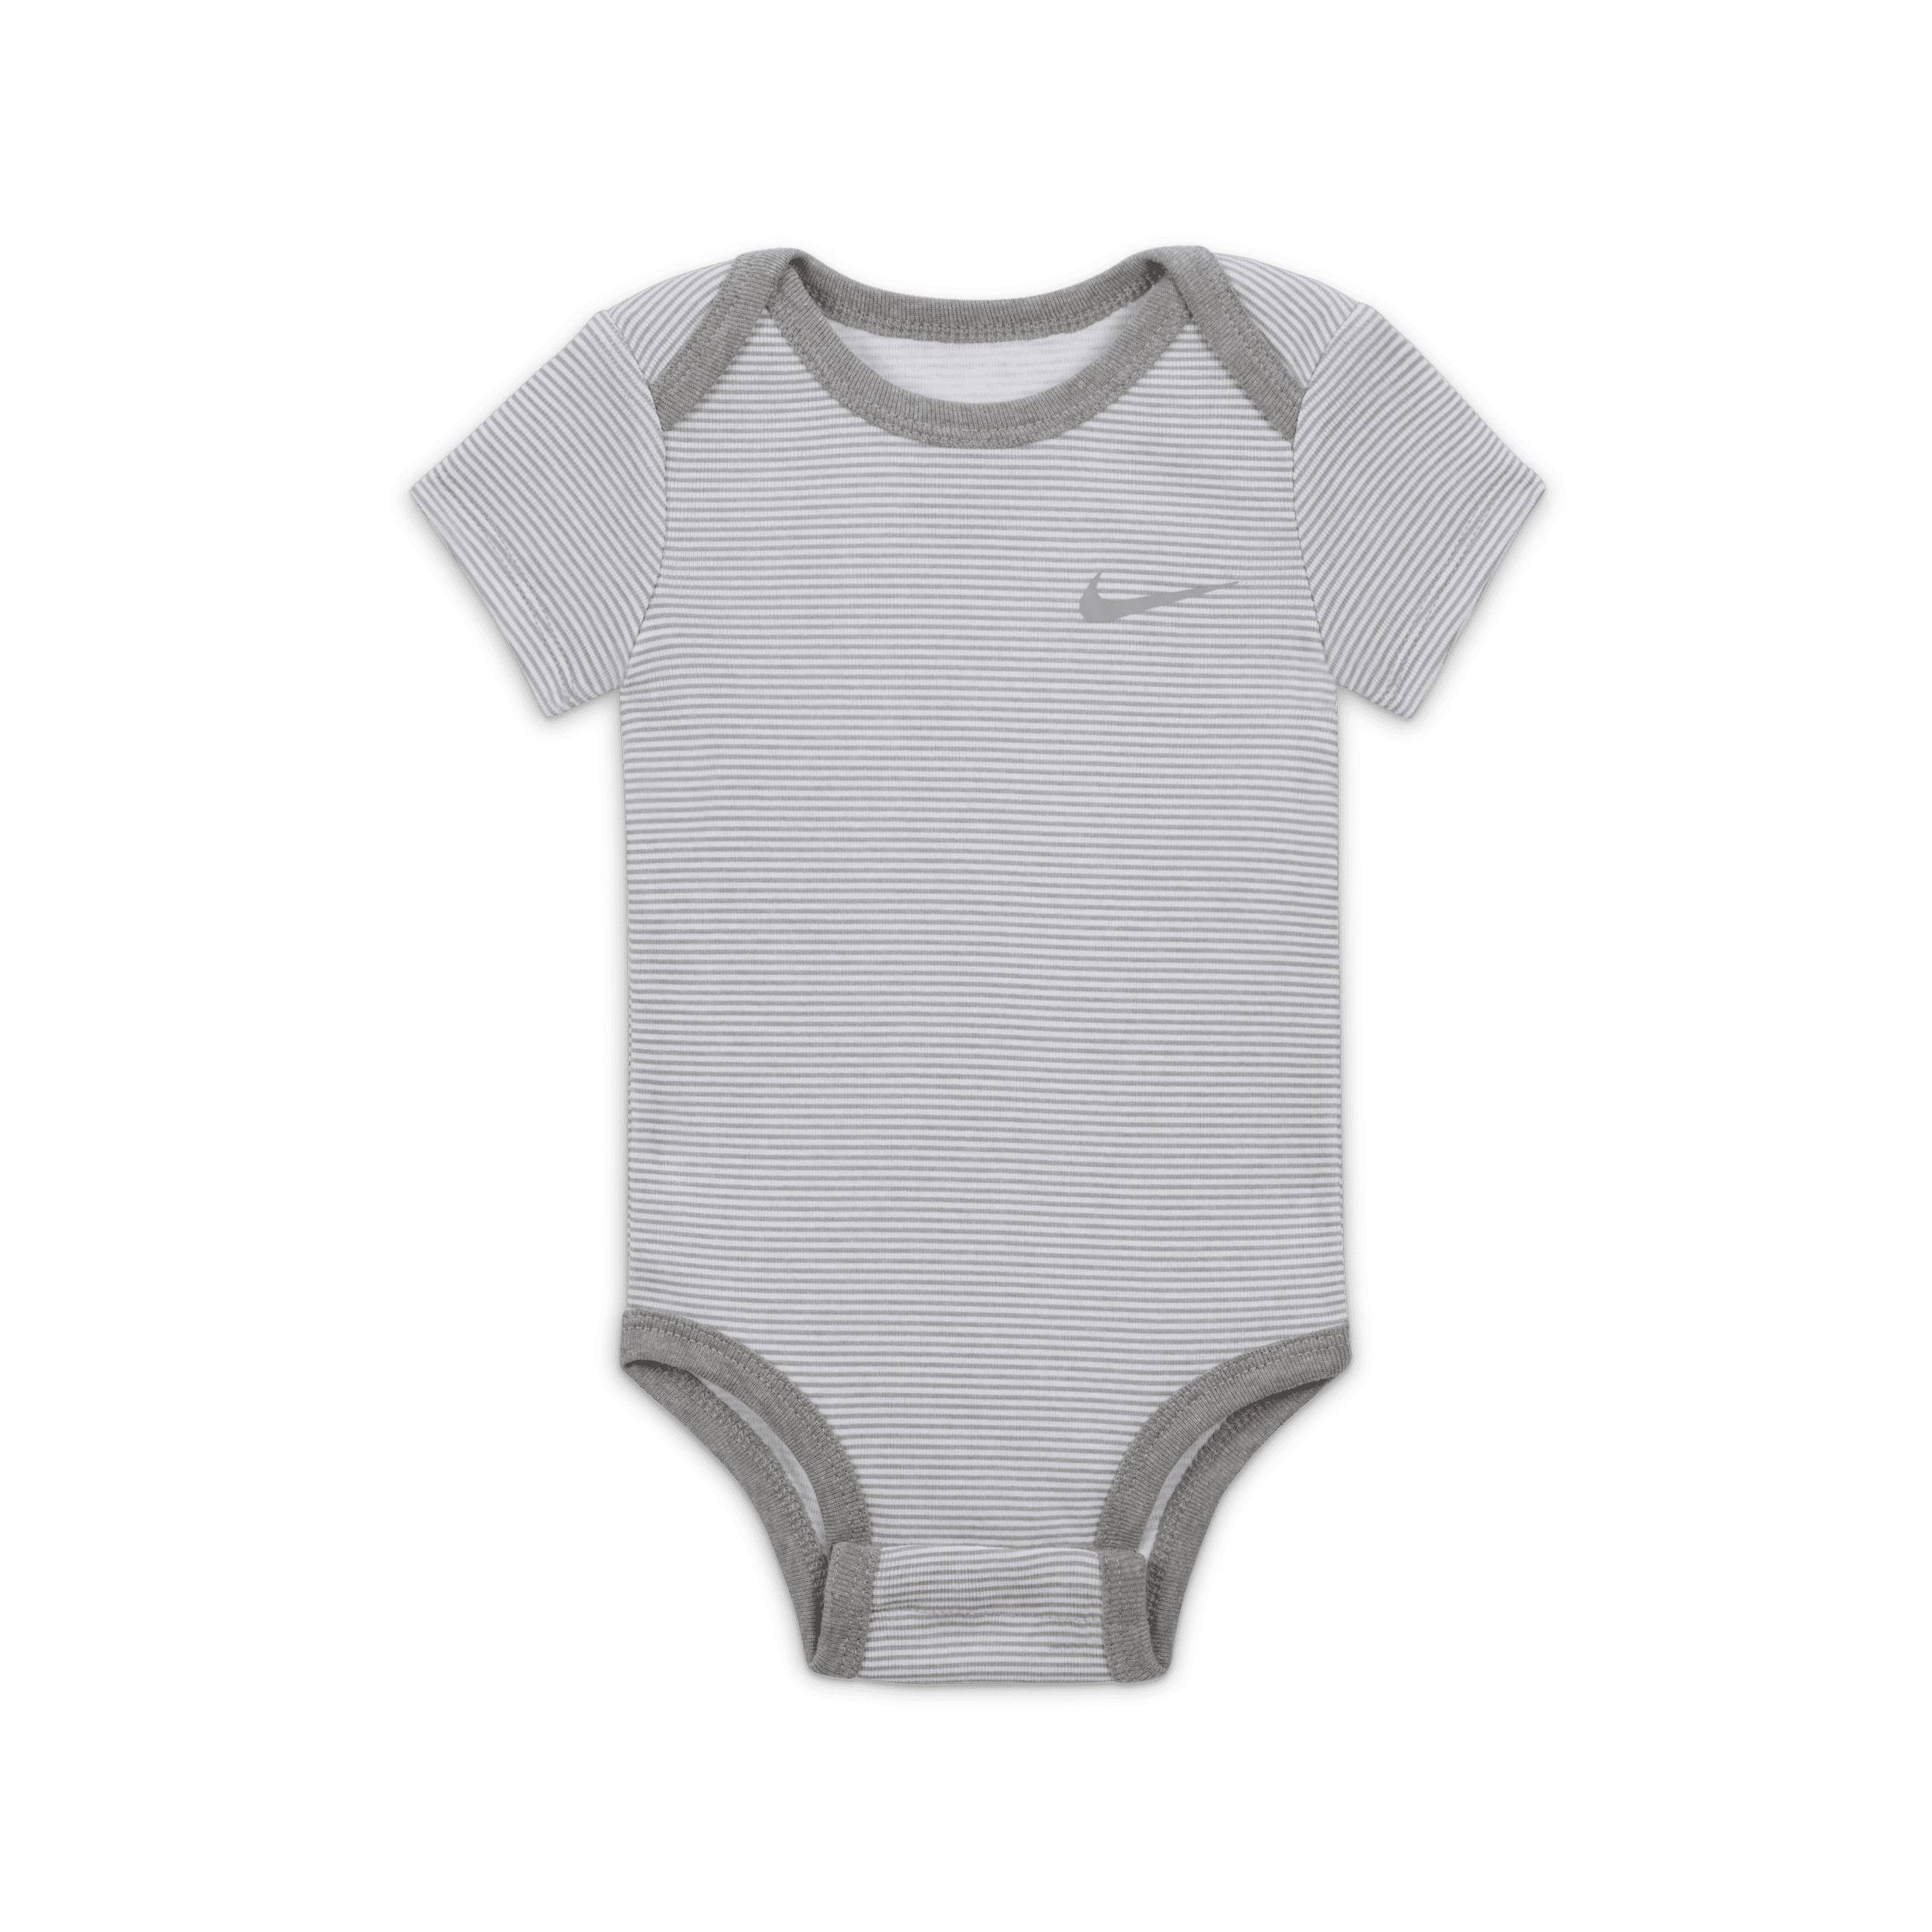 Nike Baby Essentials rompertjes voor baby's (0-9 maanden 3 stuks) Grijs